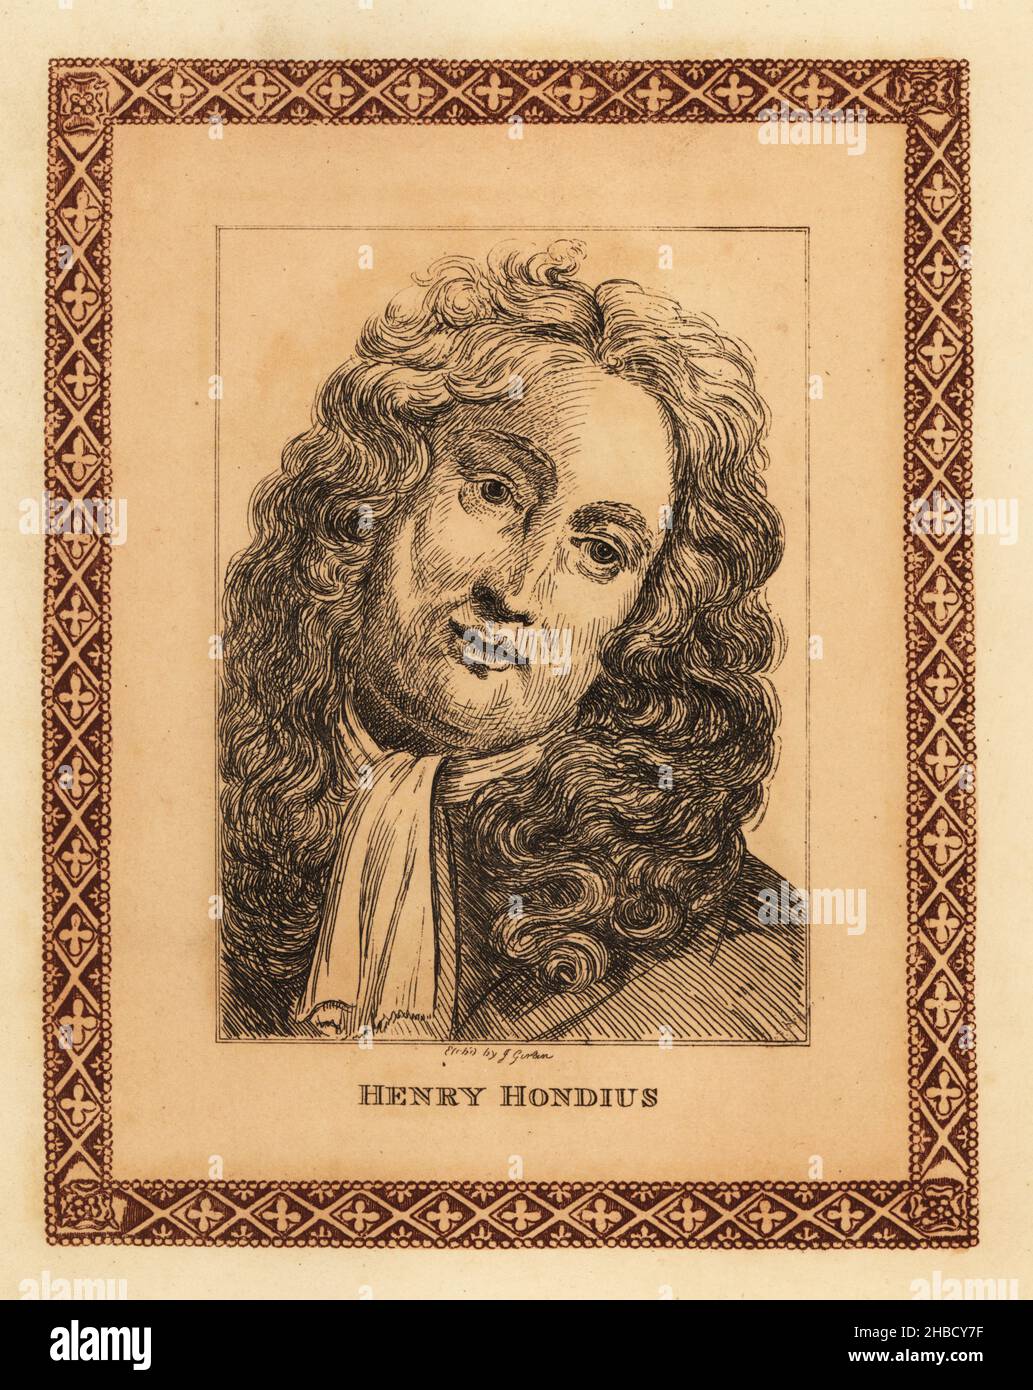 Retrato de Hendrik Hondius, 1573-1650, grabador de origen flamenco,  impresor, dibujante y editor que se asentaron en la República holandesa.  Henry Hondius. Grabado teñido dentro de una frontera decorativa por John  Girtin